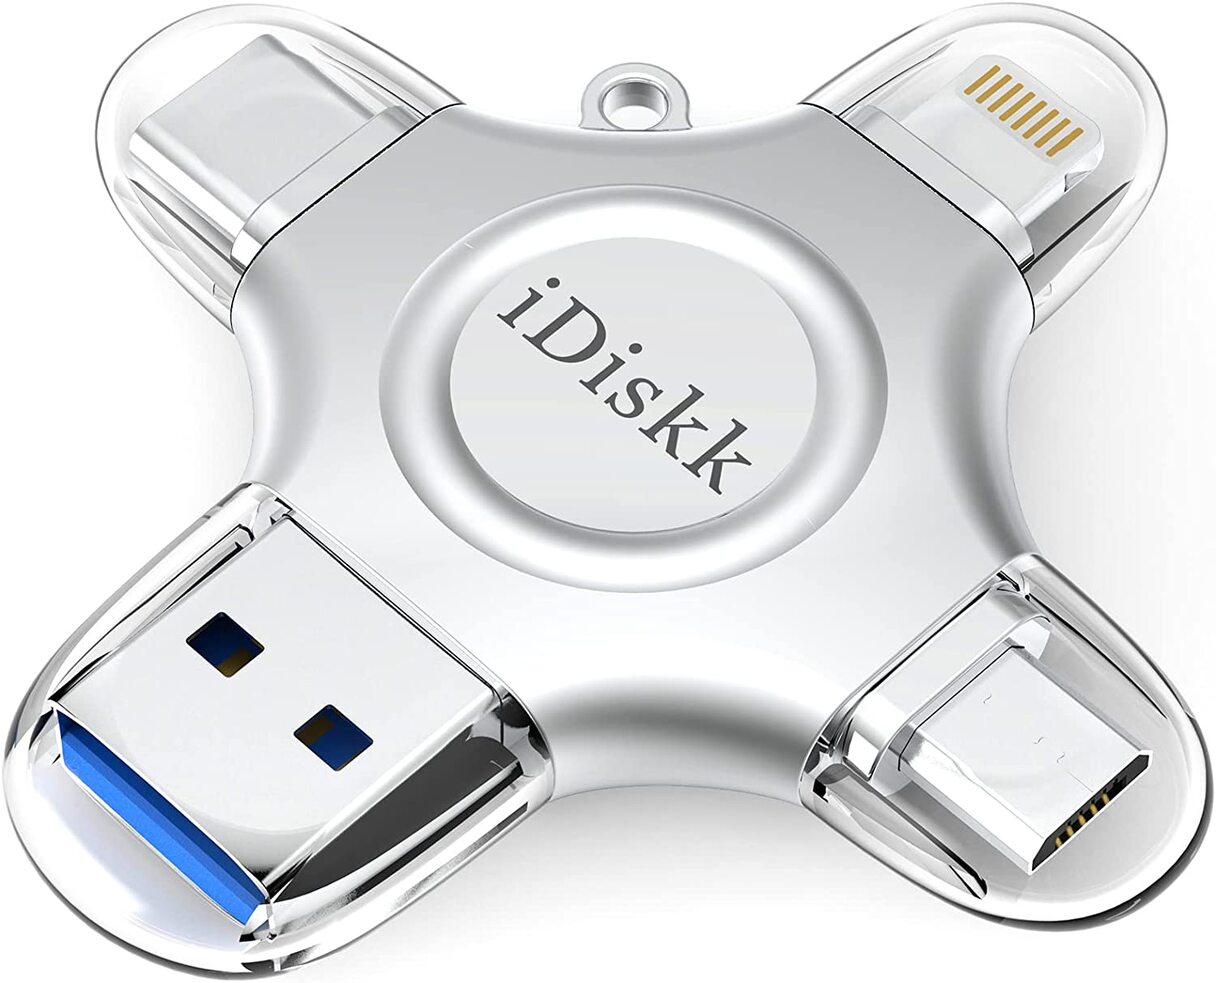 iDisk 4-in-1